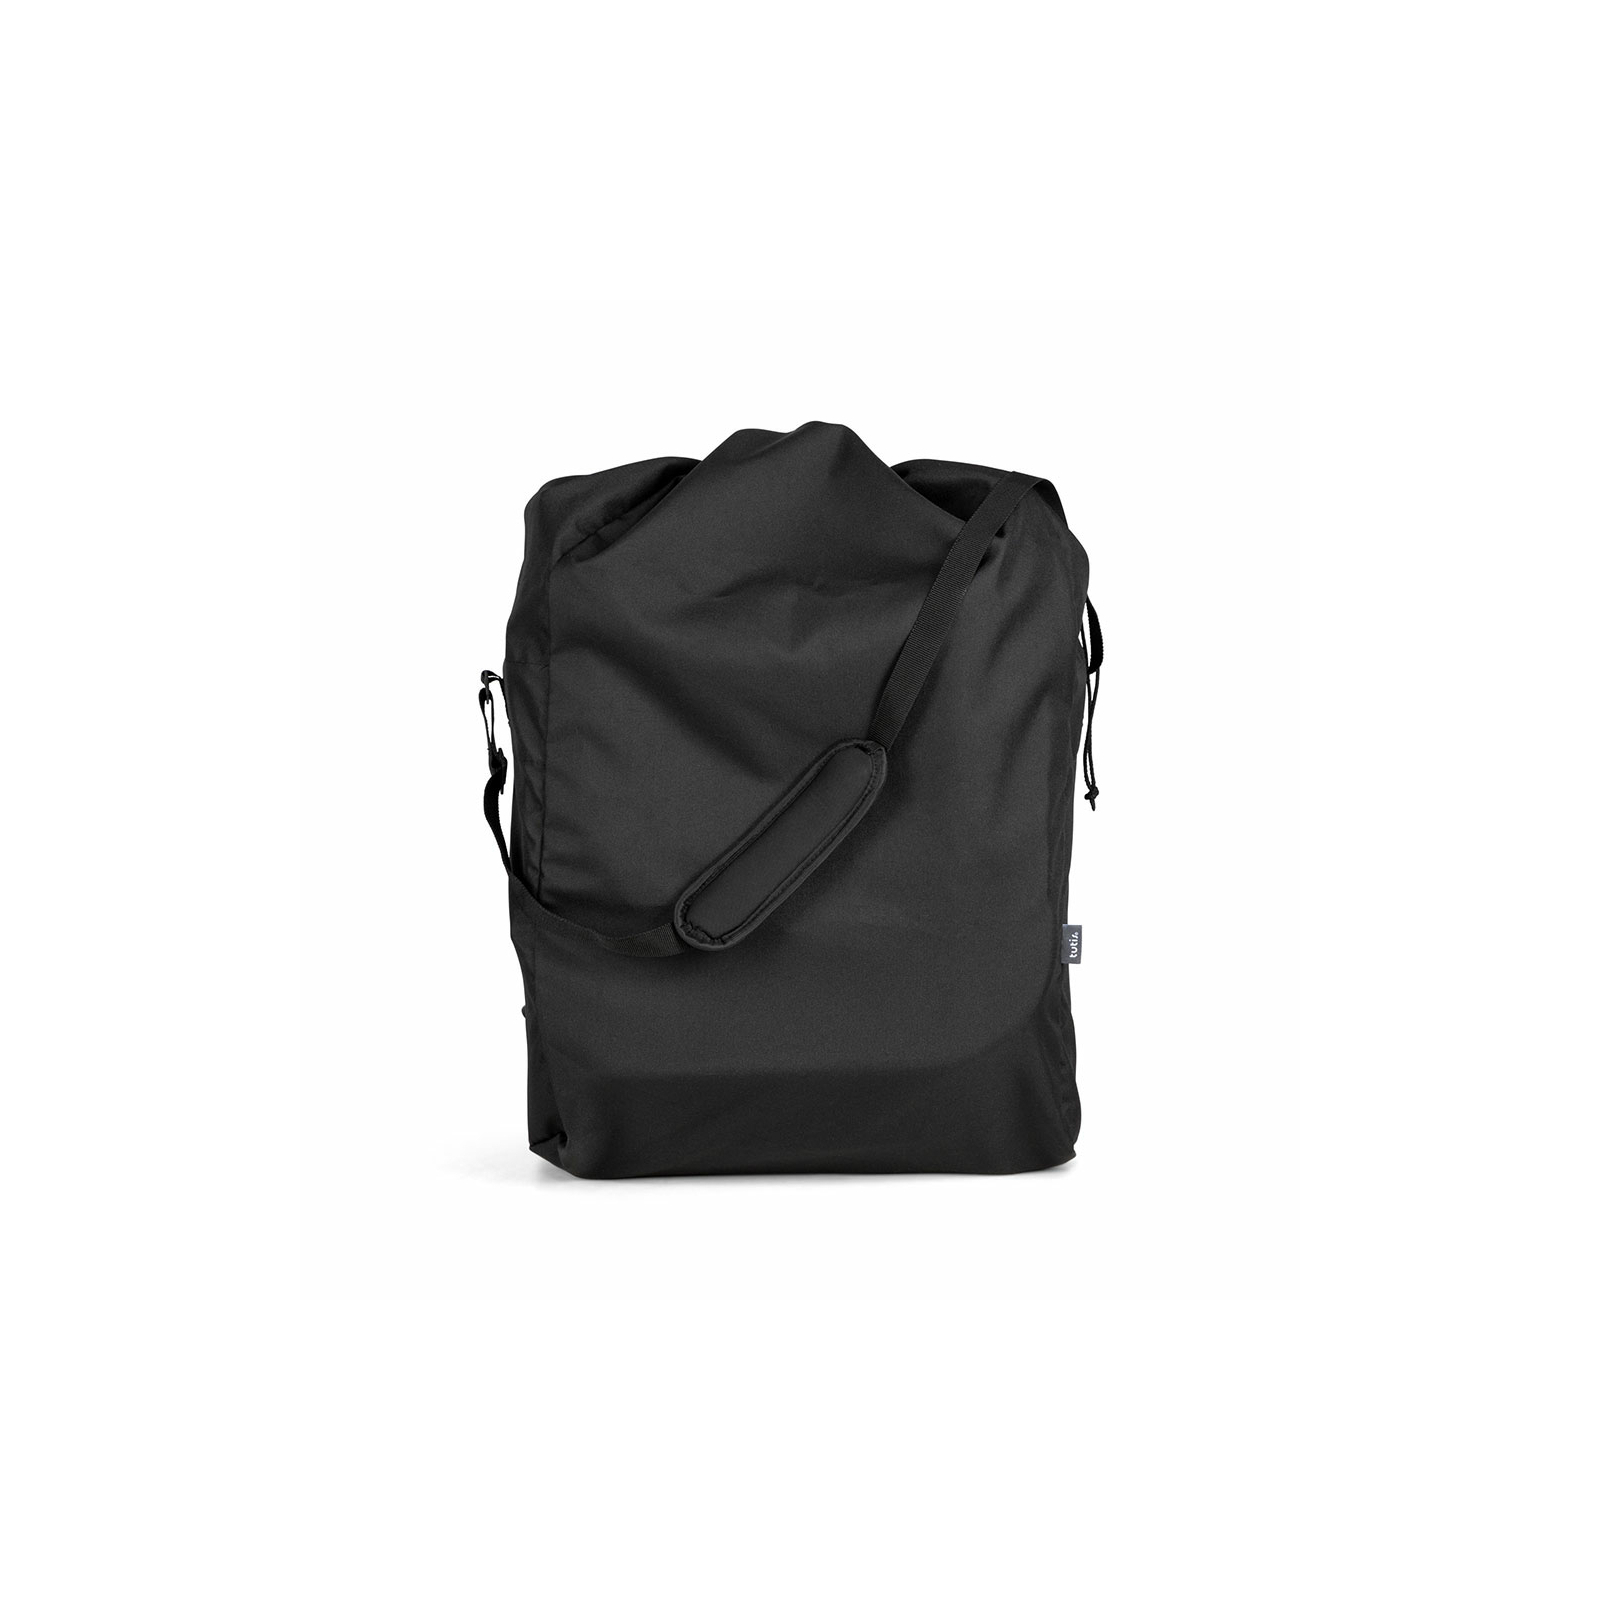 Аксессуар для коляски TUTIS Jogo дорожная сумка (KK01) изображение 3